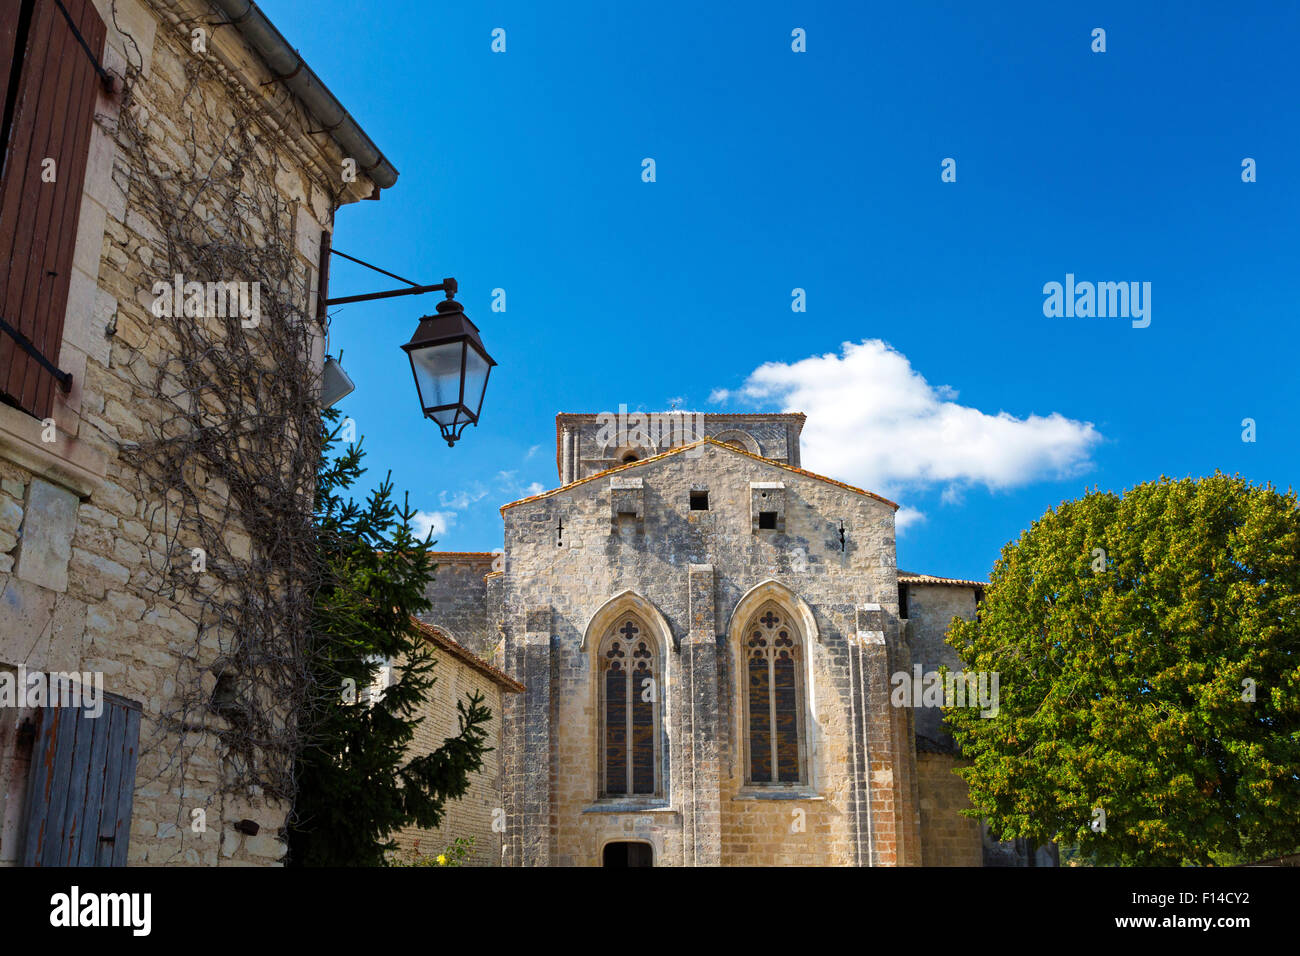 Monastère de Saint Maur, Marcillac Lanville, Charente Maritime, France Banque D'Images